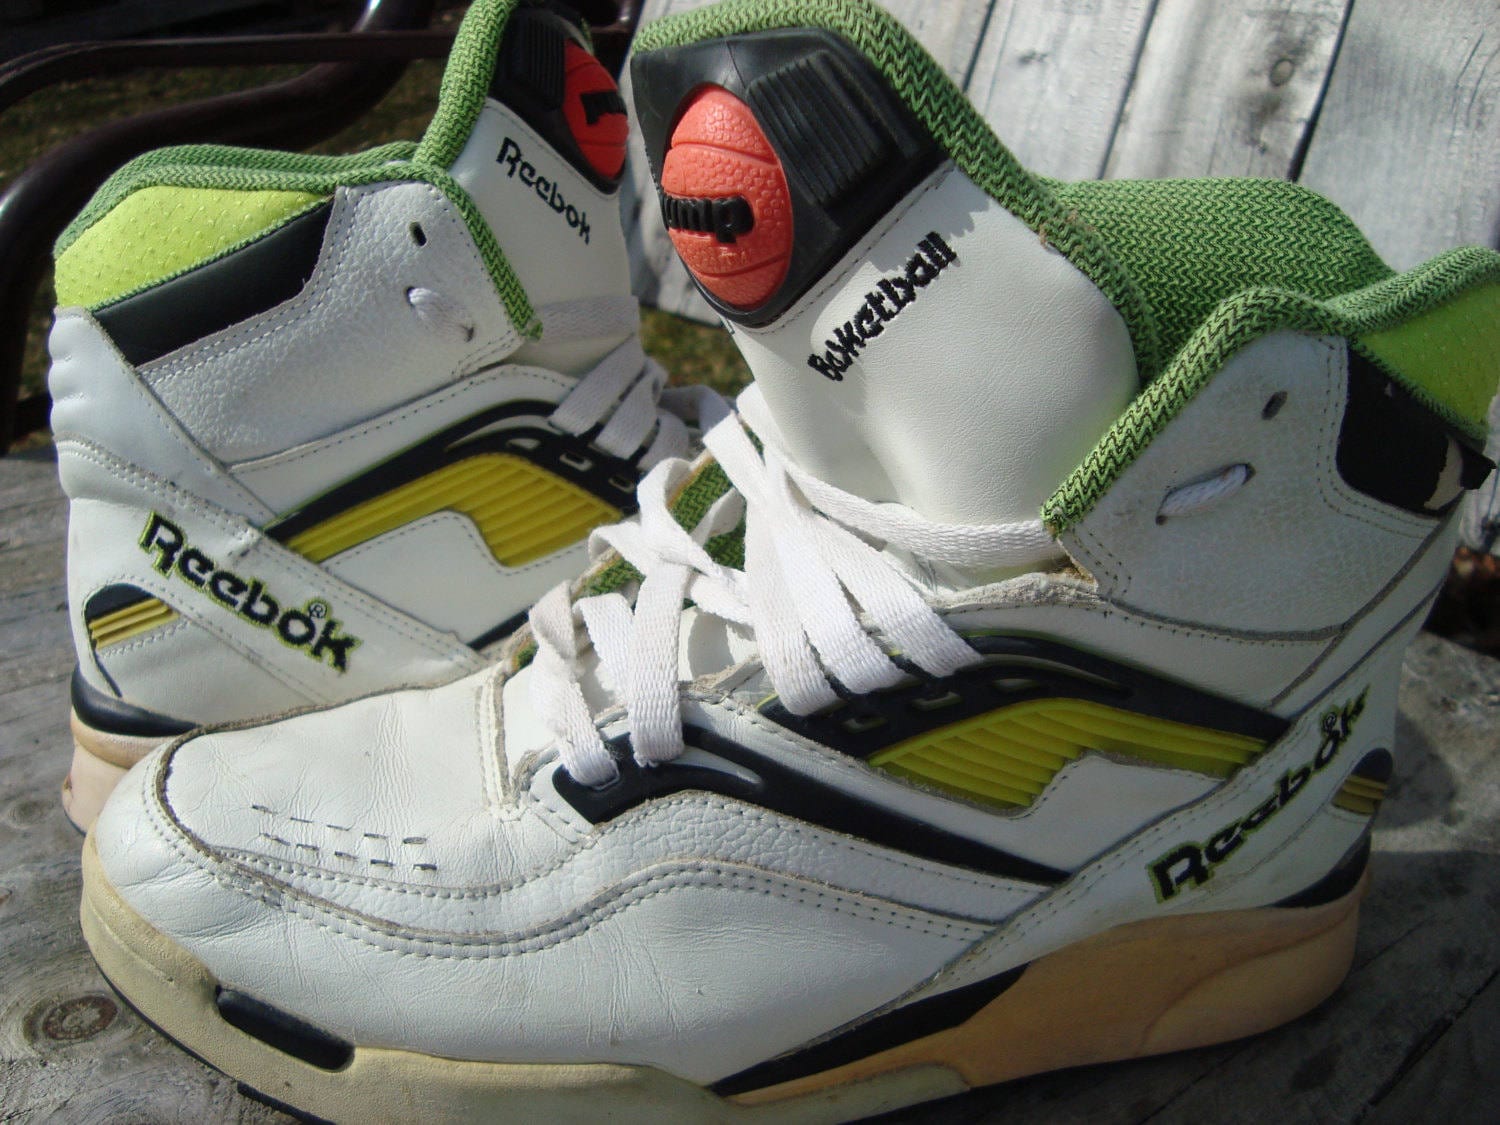 Uitgang schoorsteen uitlokken ORIGINAL 90s Reebok Pumps Vintage Shoes Rare Reebok Pump High - Etsy